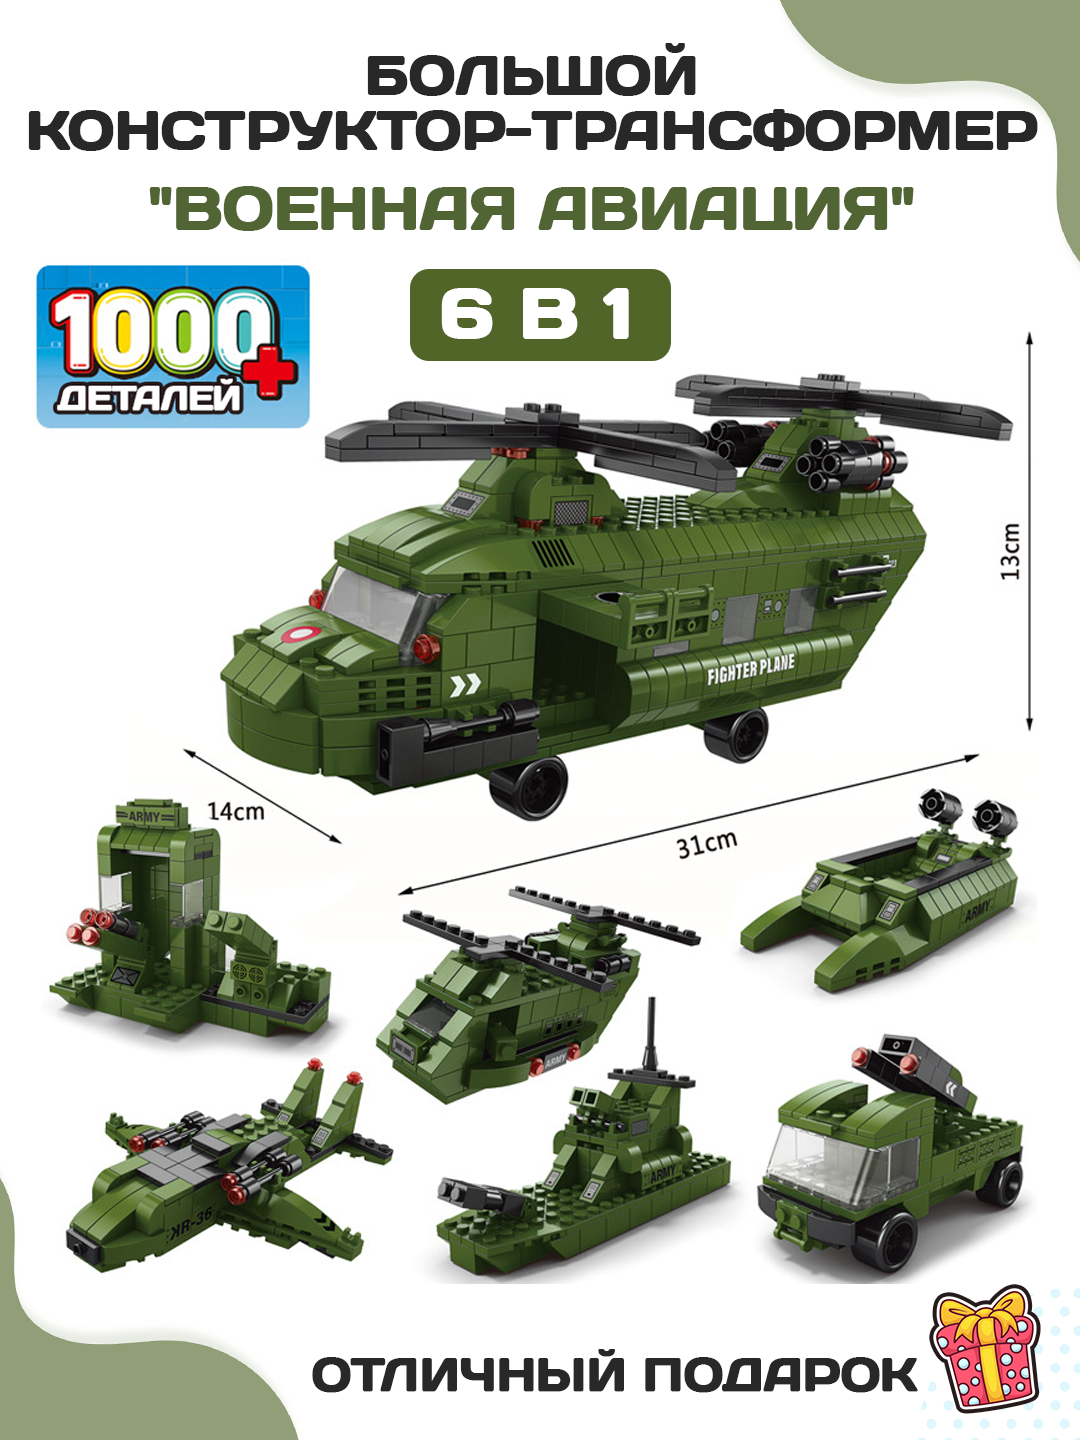 Большой конструктор-трансформер 6 в 1 для мальчиков и девочек, 1000 деталей, серия - Военная техника